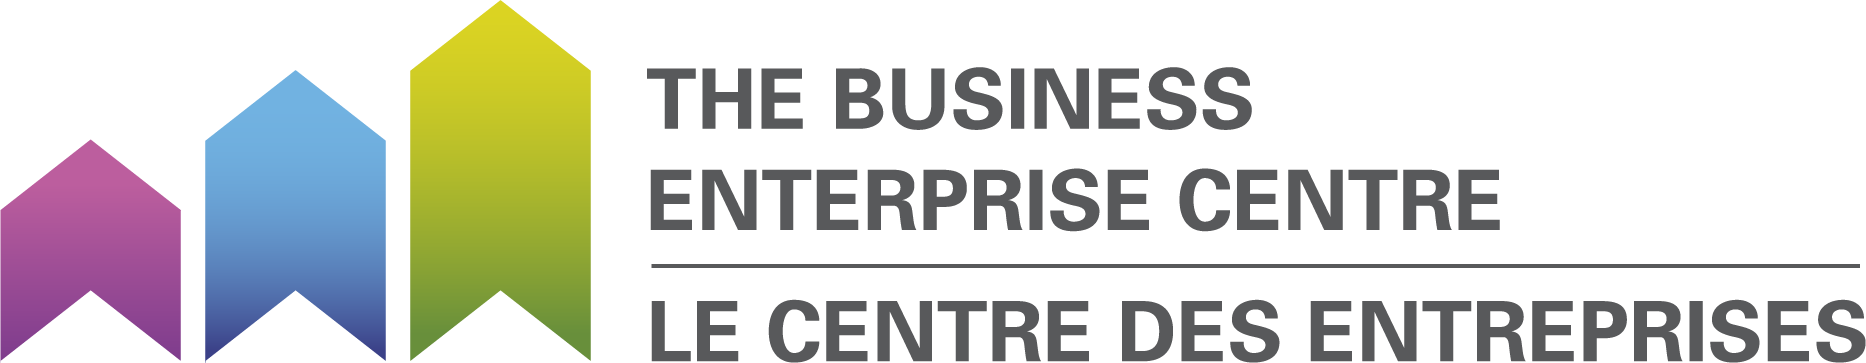 Business Enterprise Centre.png